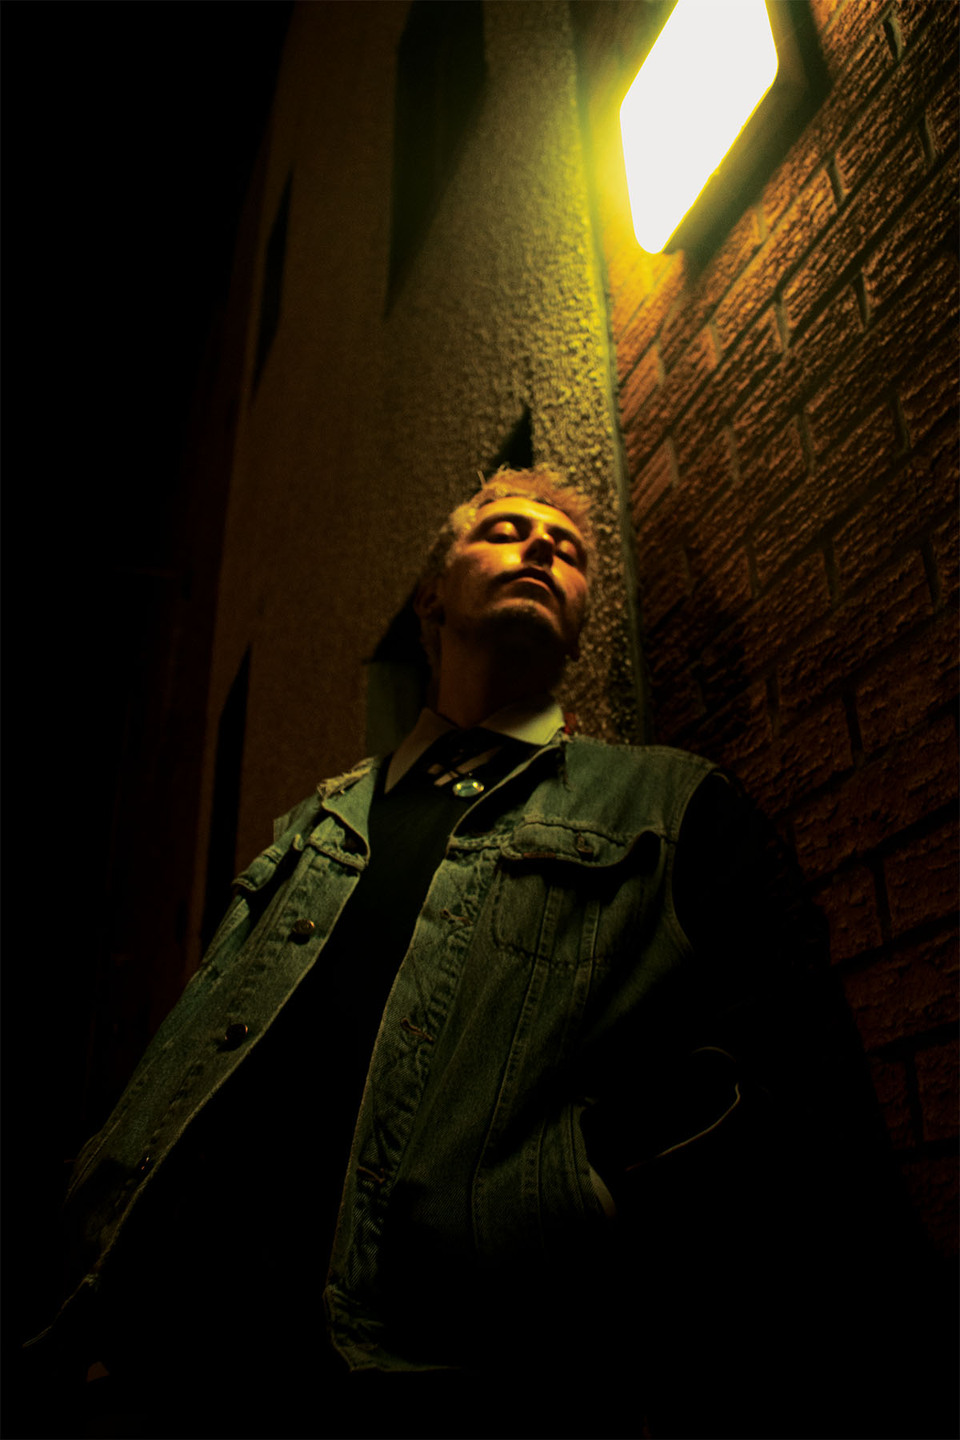 Man in a denim jacket stands under an external wall light looking down